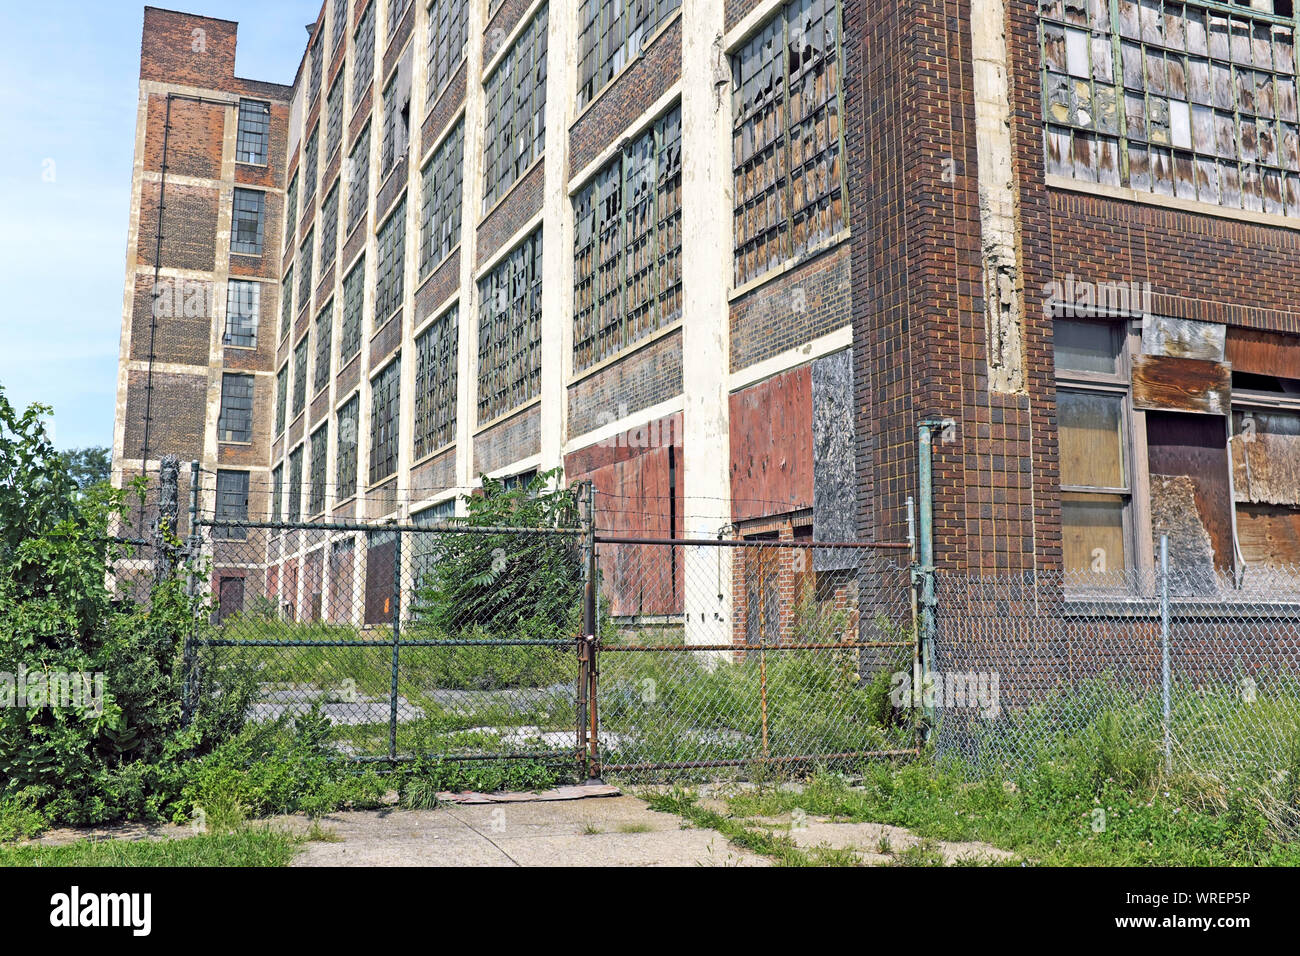 Die Richman Brothers Factory an der East 55th Street in Cleveland, Ohio, USA, sitzt geschlagen und verlassen, nachdem sie 1990 ihre Produktion eingestellt hatte. Stockfoto